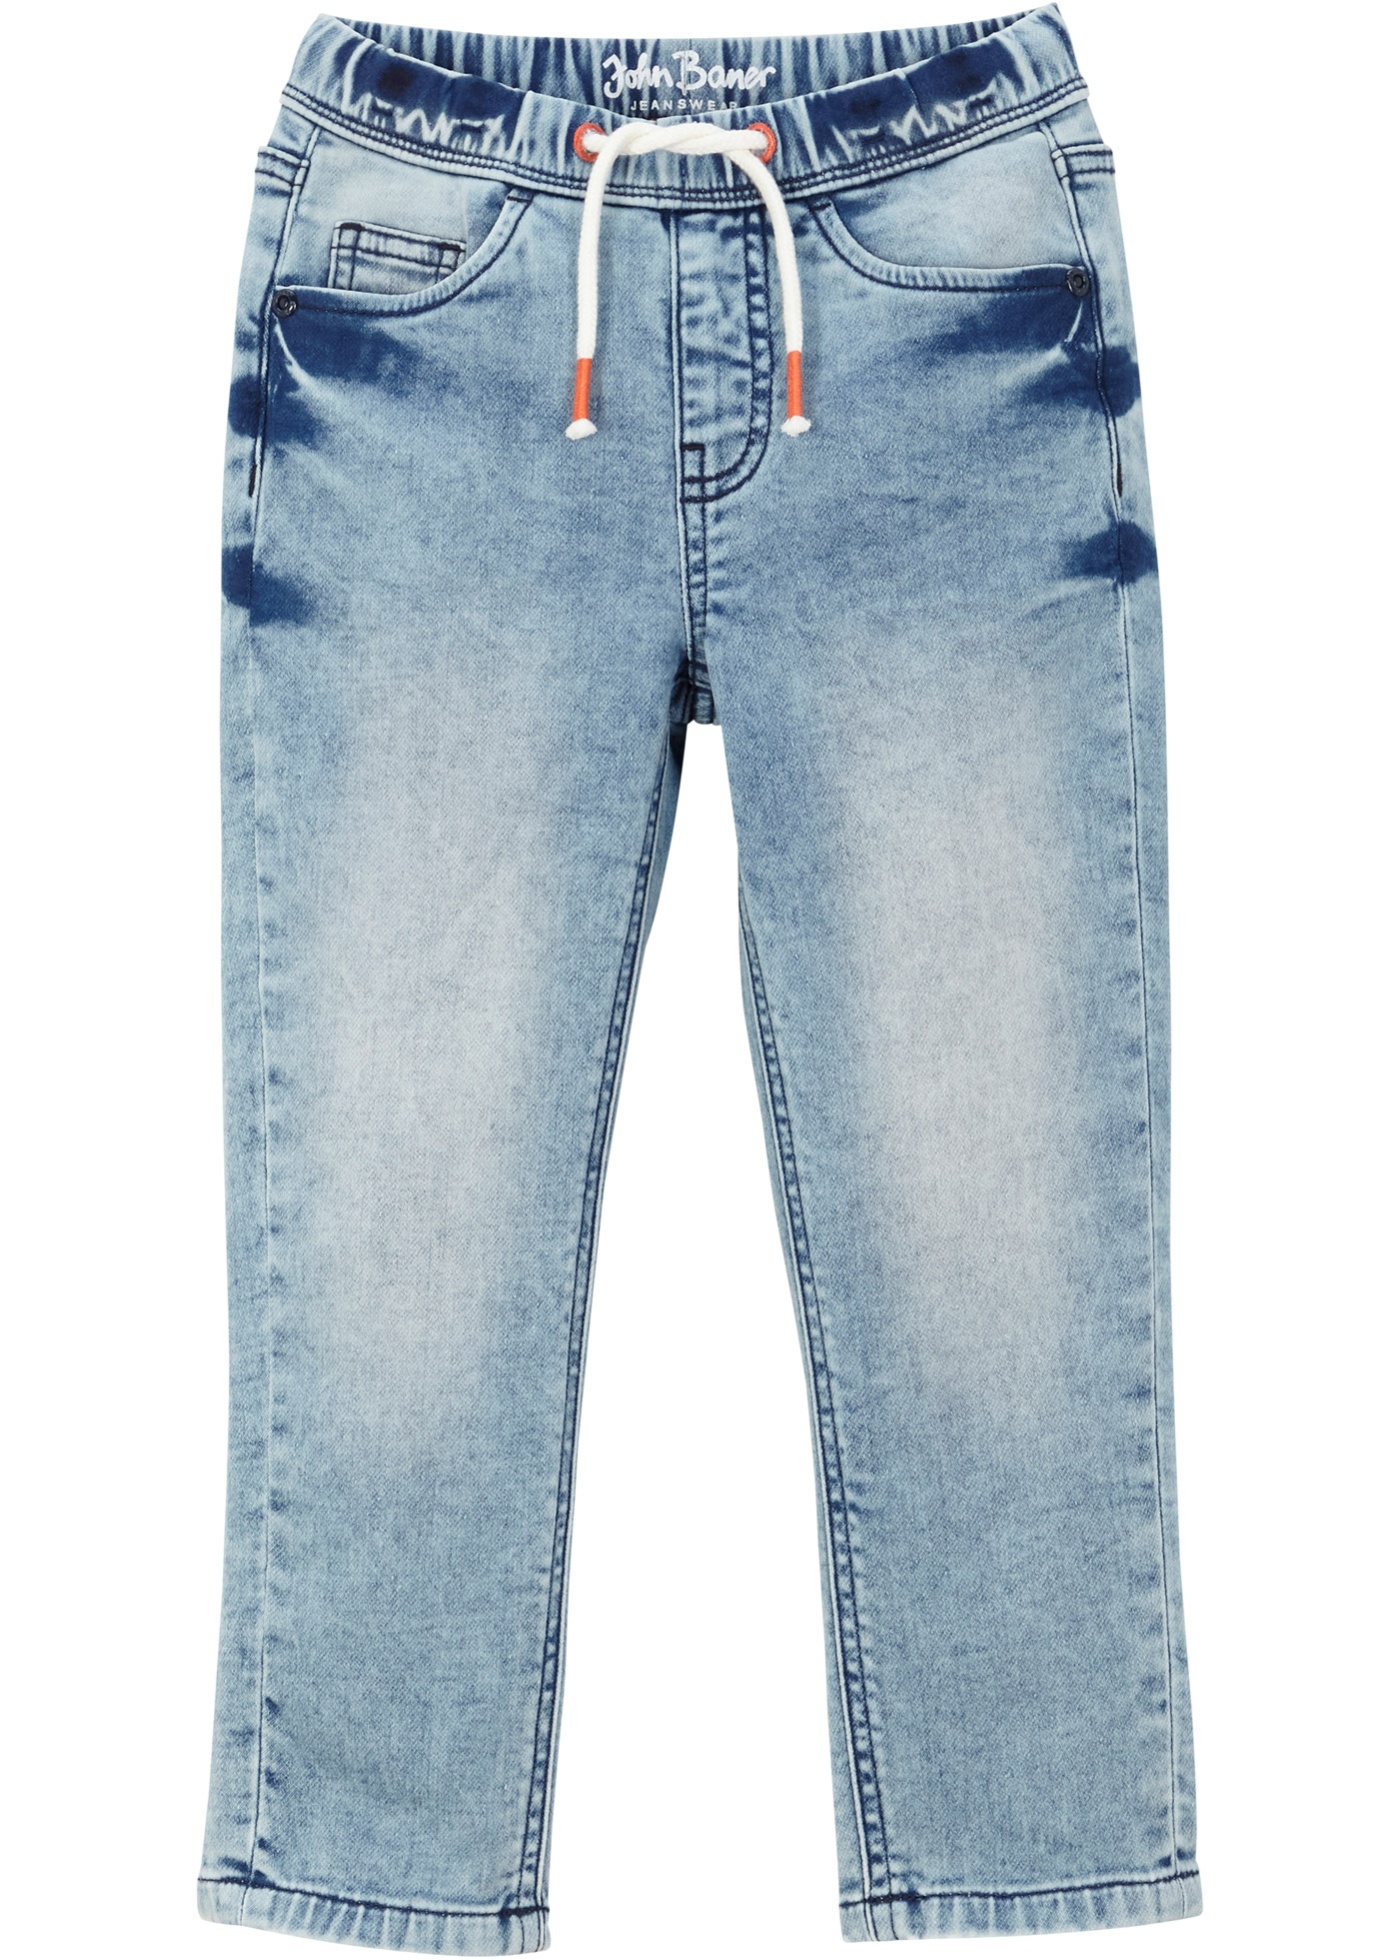 Jungen Sweat-Jeans mit Details, Slim Fit